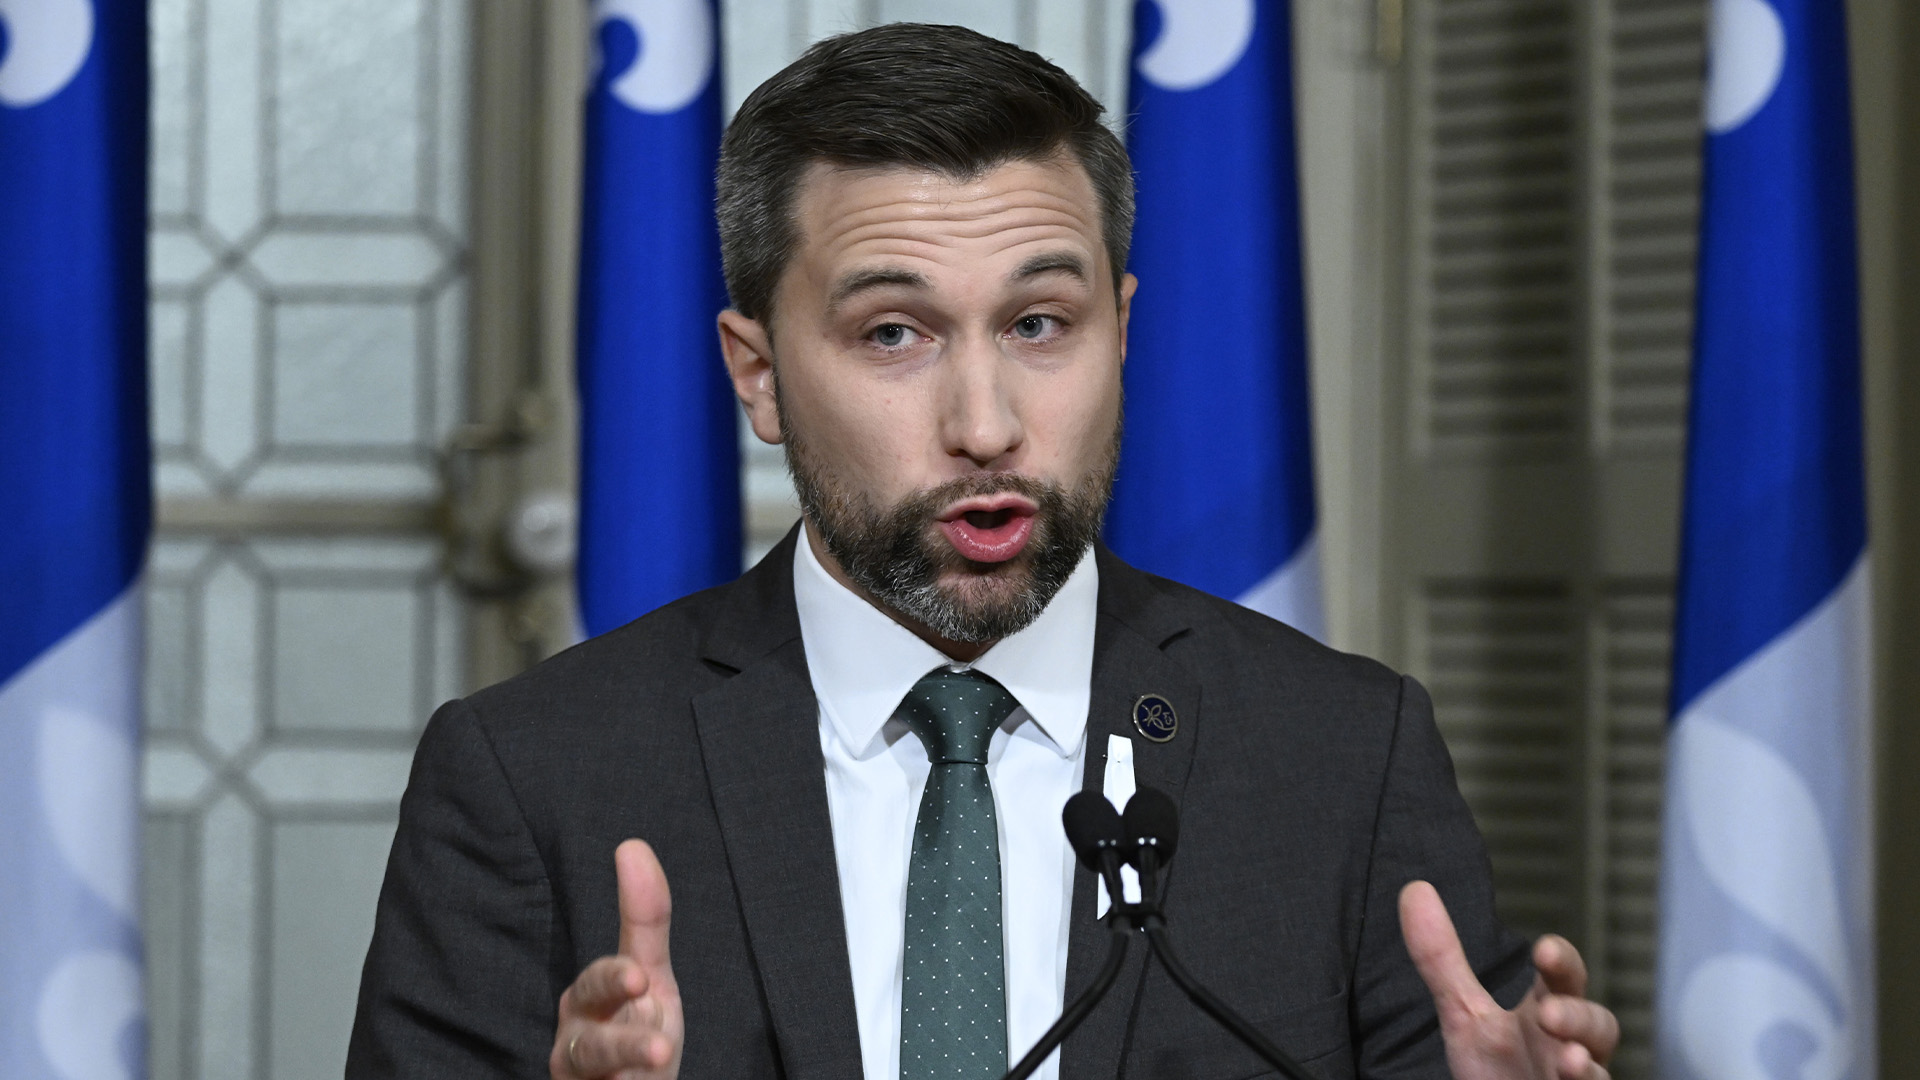 Le chef de Québec solidaire, Gabriel Nadeau-Dubois, réagit au discours inaugural, à l'Assemblée législative de Québec, le mercredi 30 novembre 2022.